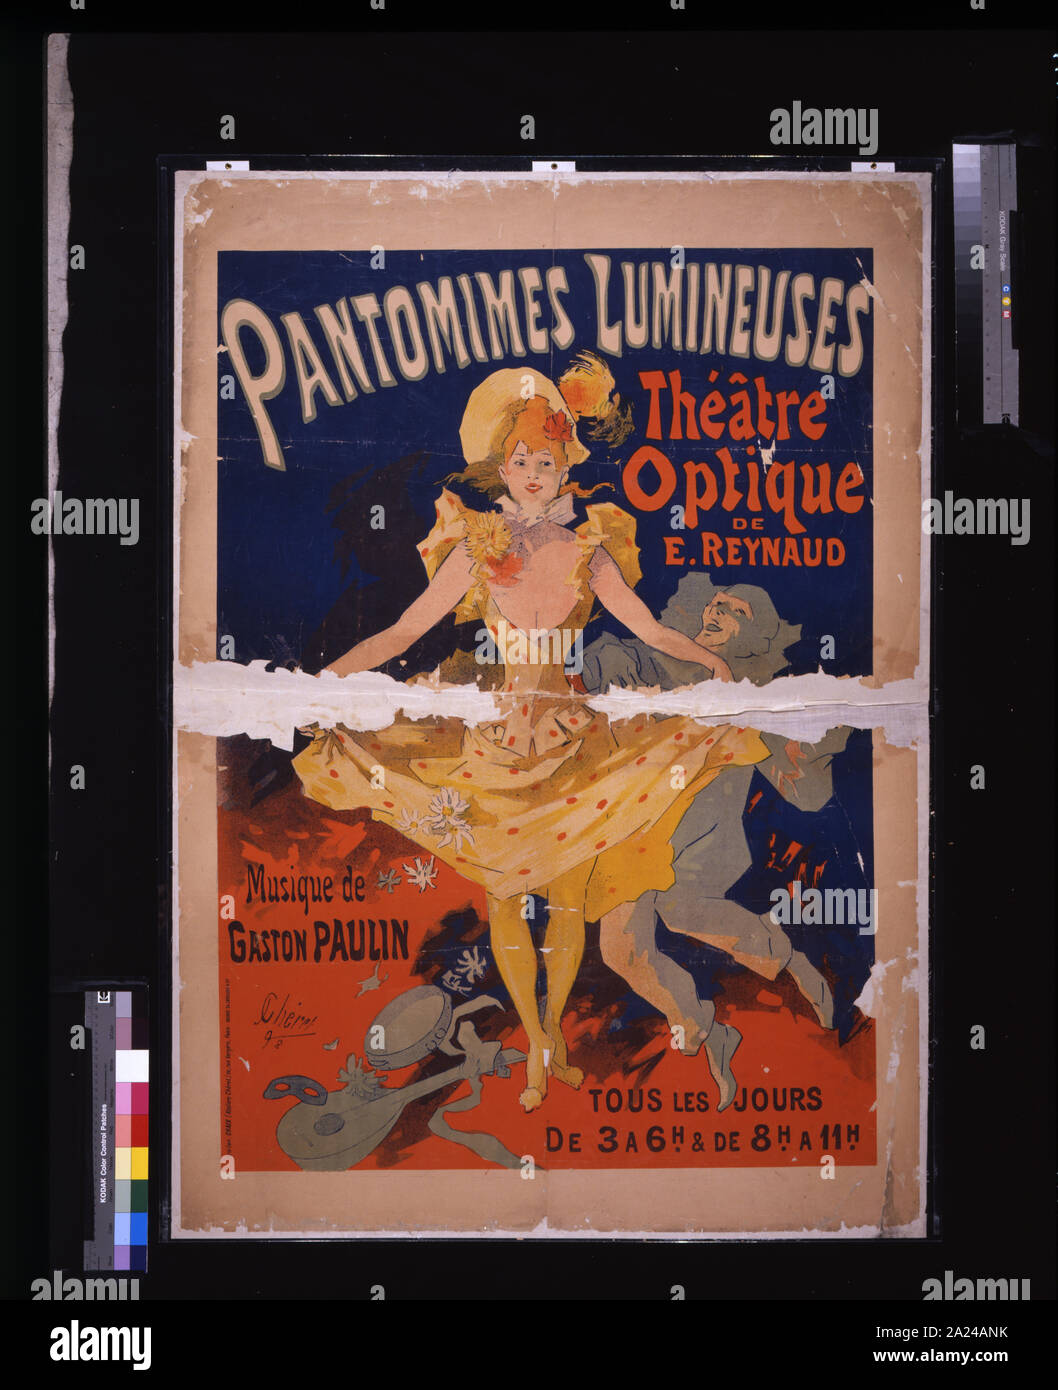 Pantomimes lumineuses: Théâtre optique de E. Reynaud, musique de Gaston Paulin / / J. Chéret, '92. Stock Photo